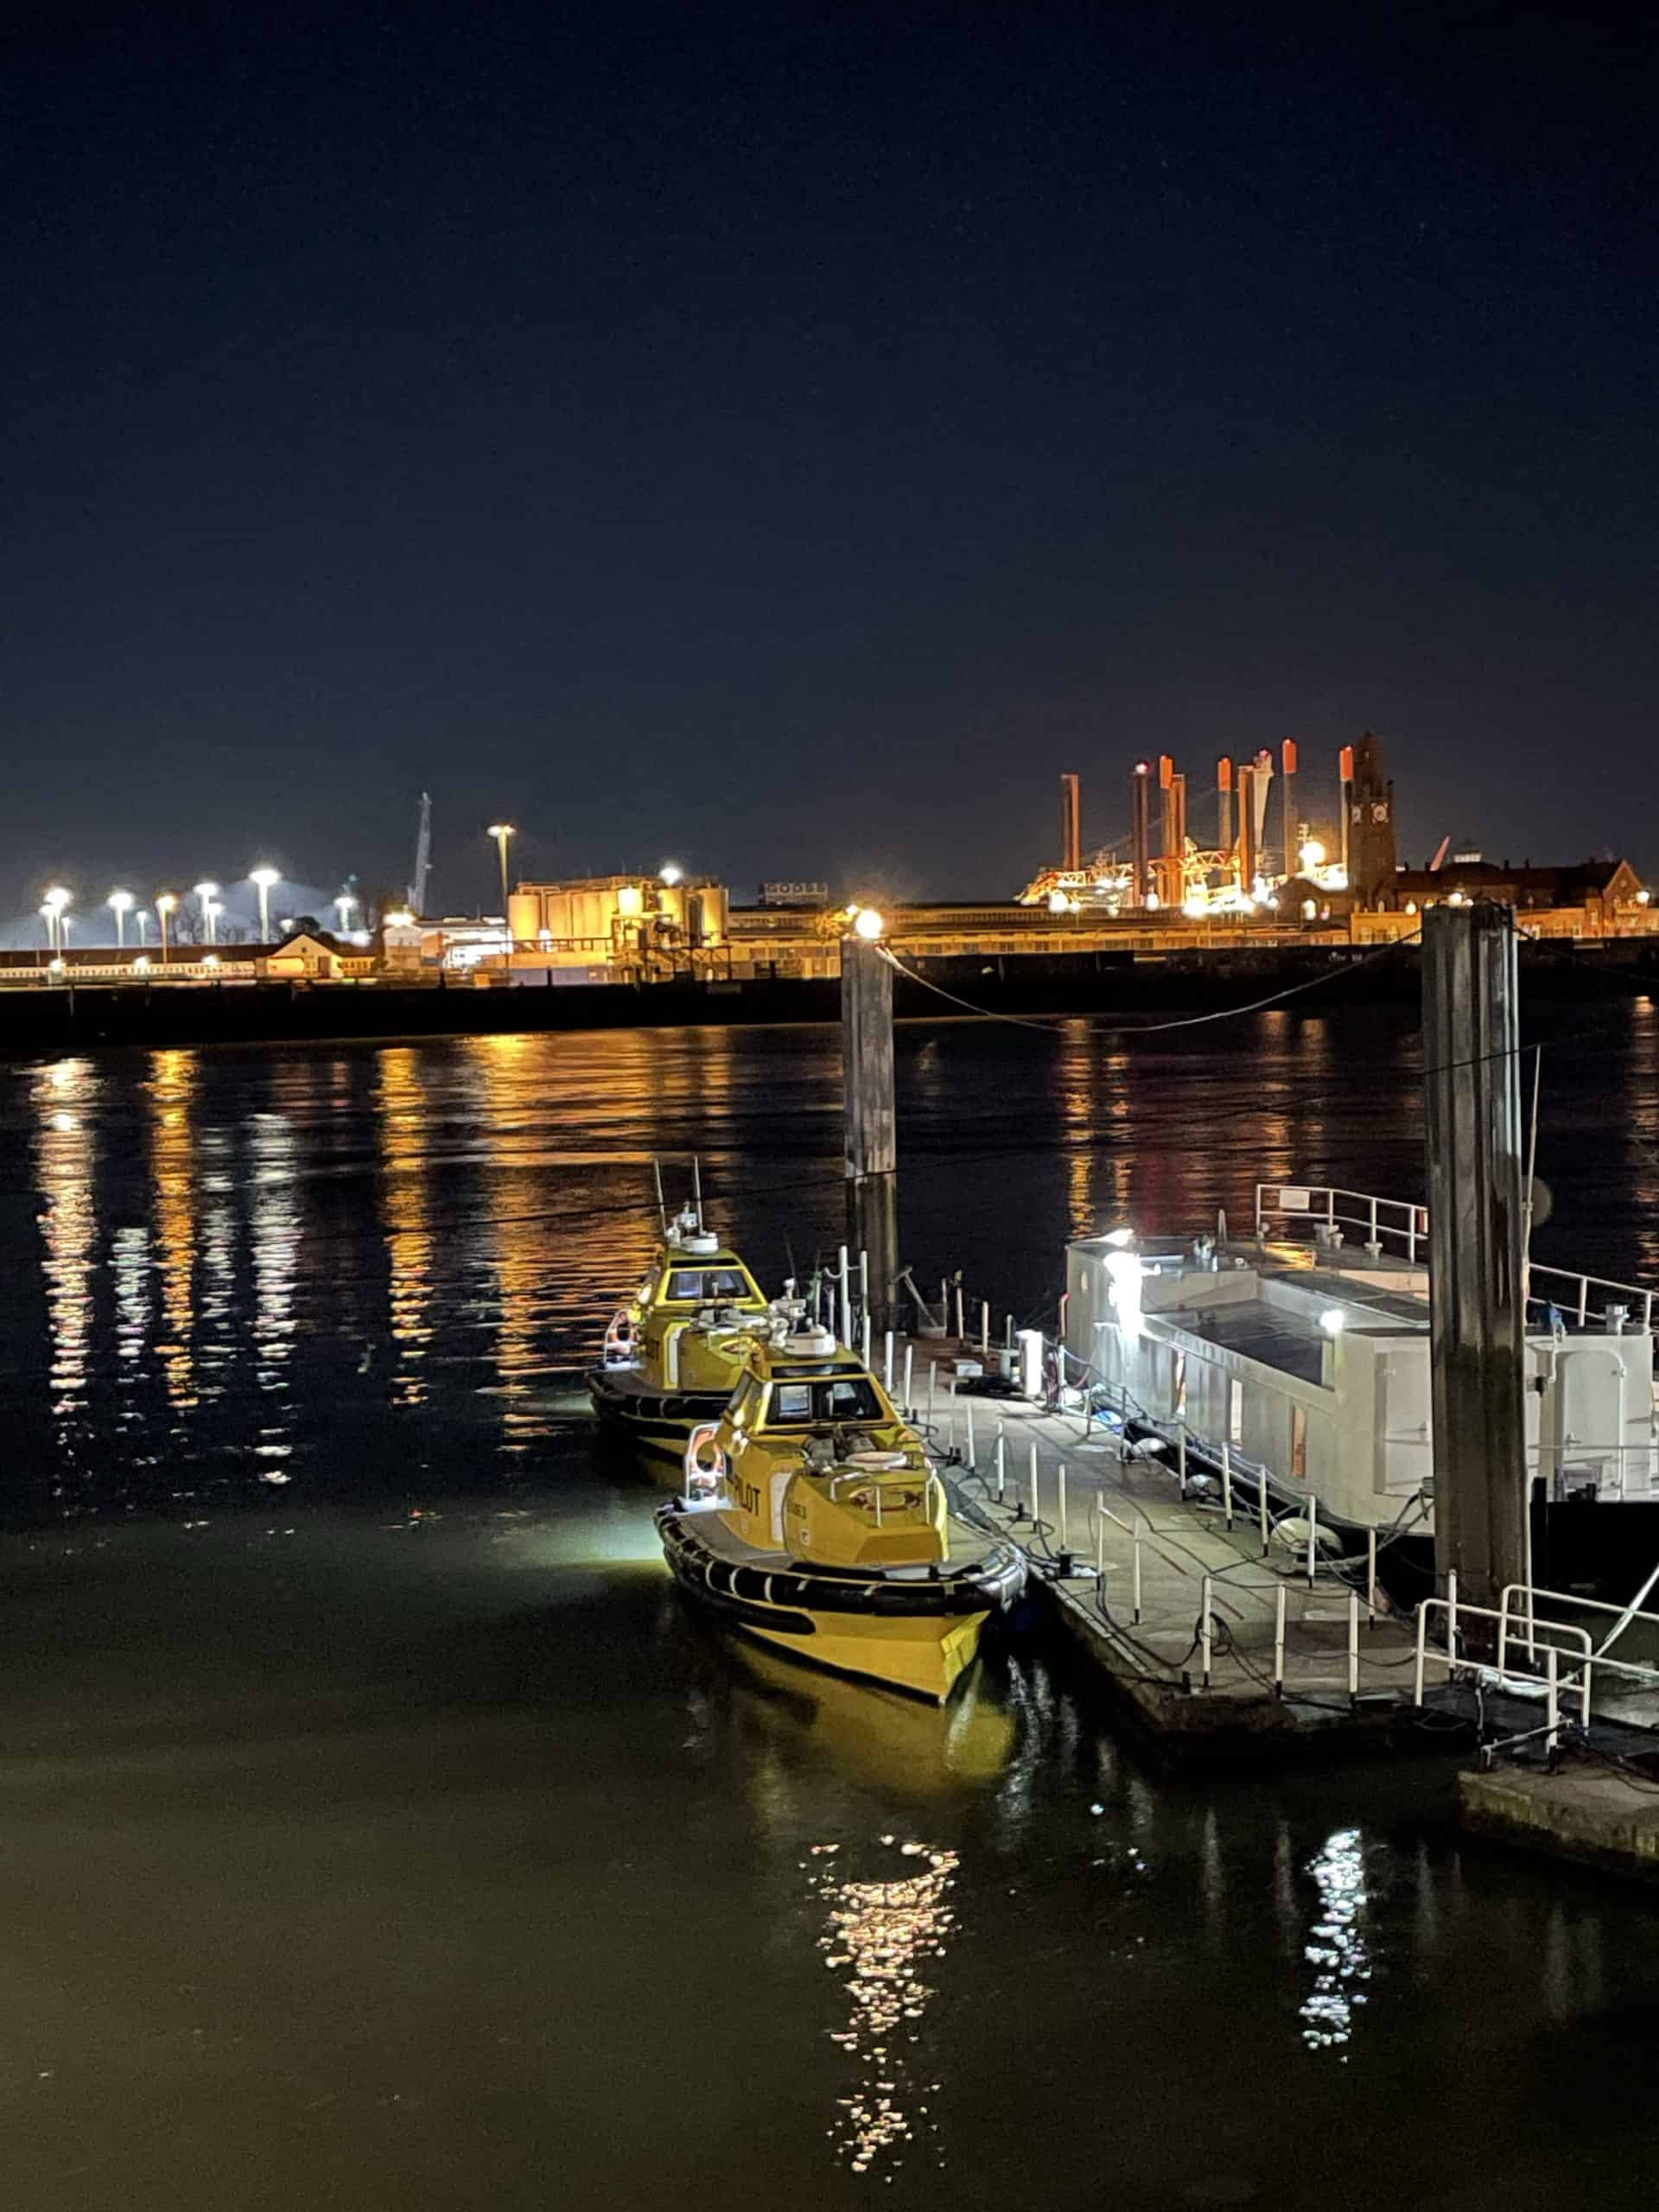 Hafen von Cuxhaven bei Nacht